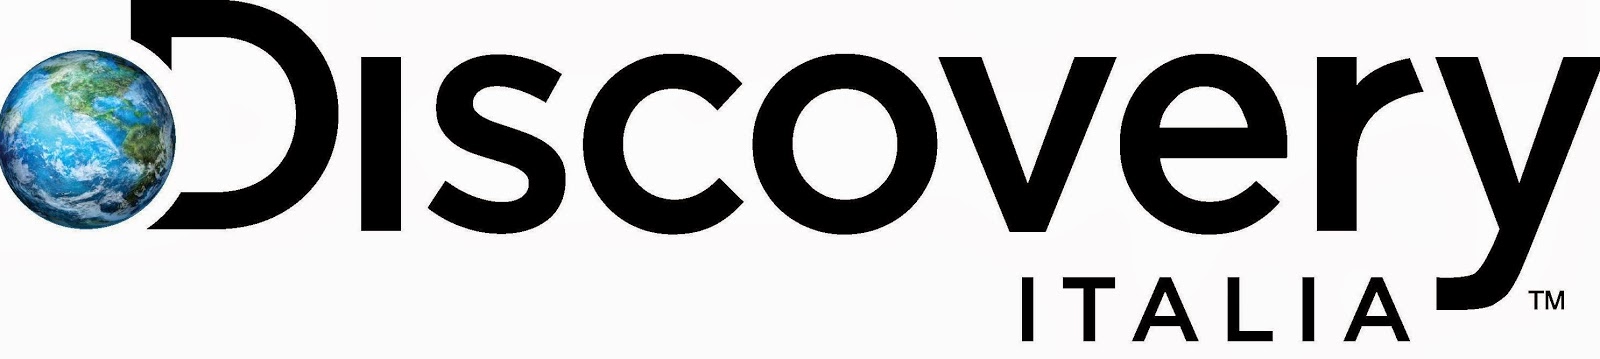 Discovery Italia a Marzo 3° editore televisivo nazionale con share 5.3%